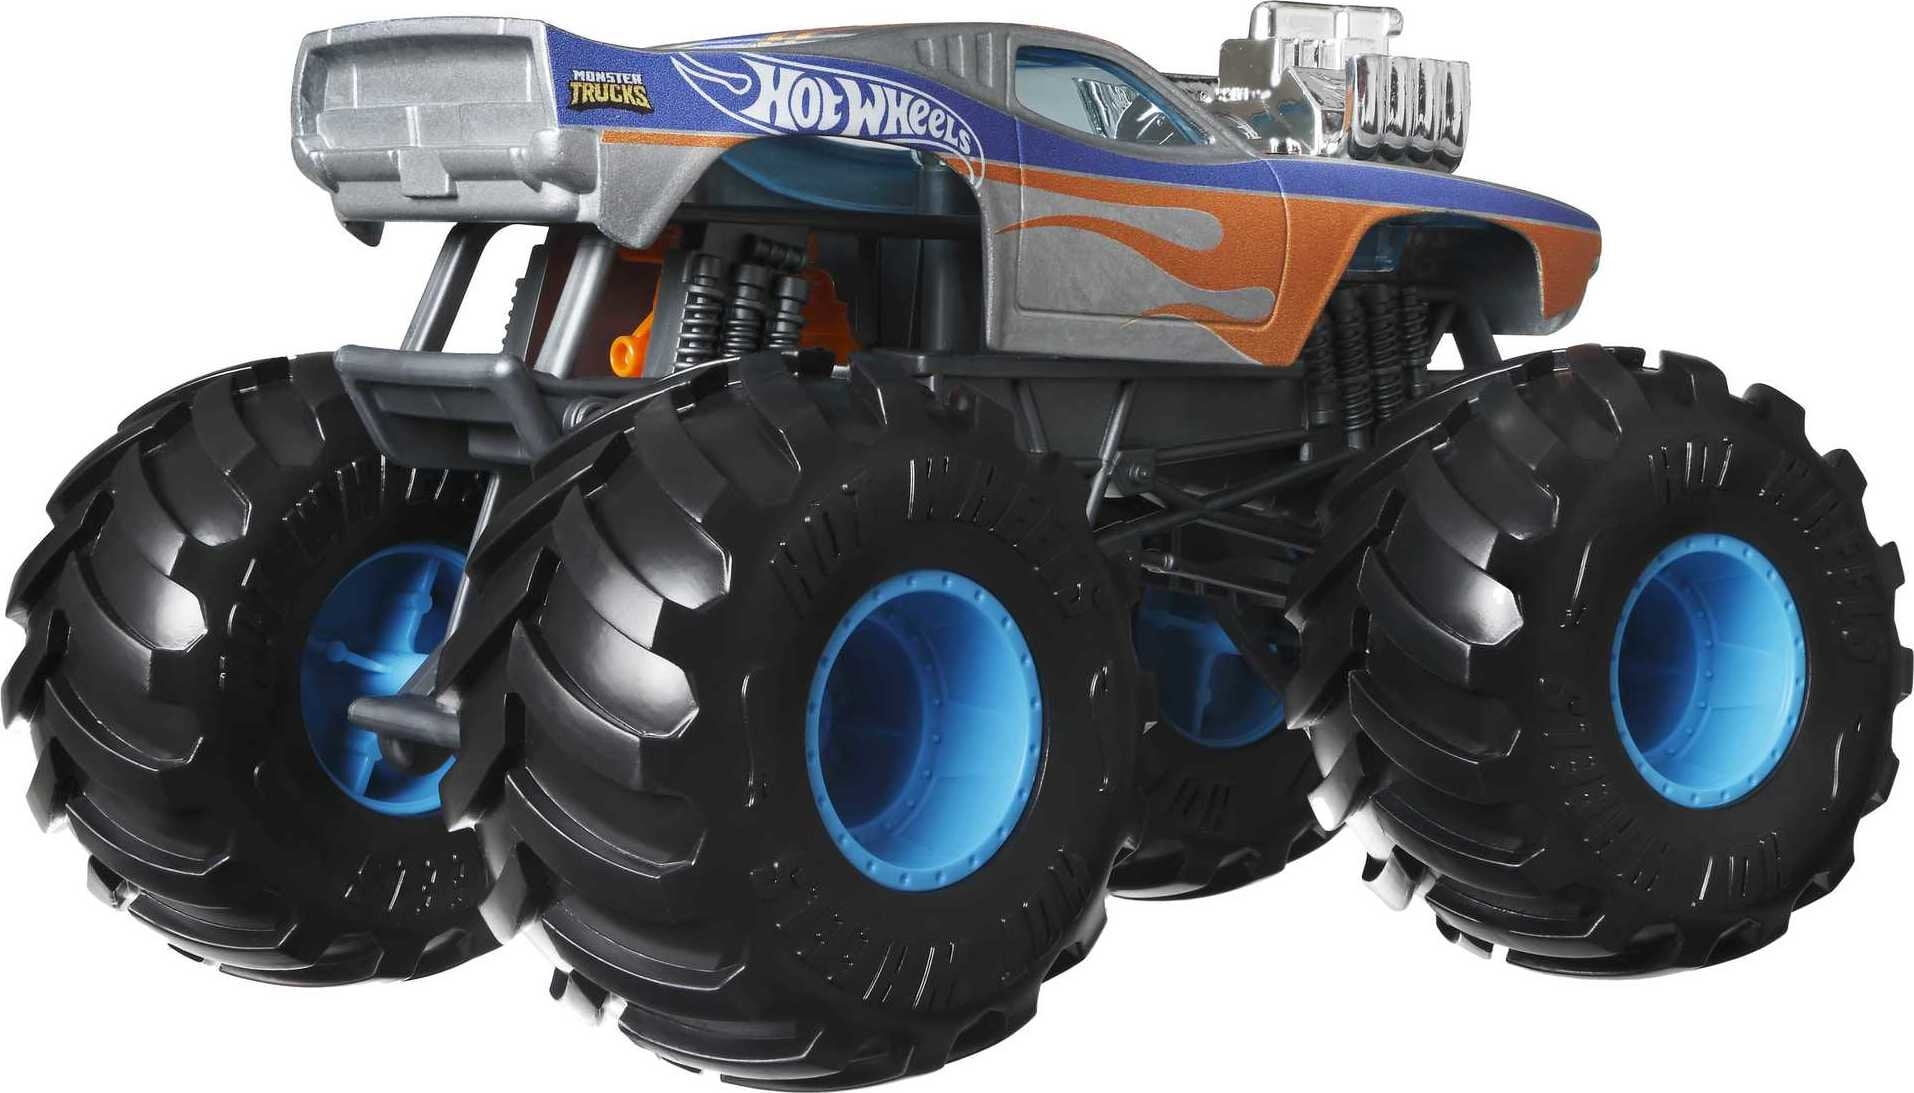 Hot wheels monster trucks 1:24 monster portions